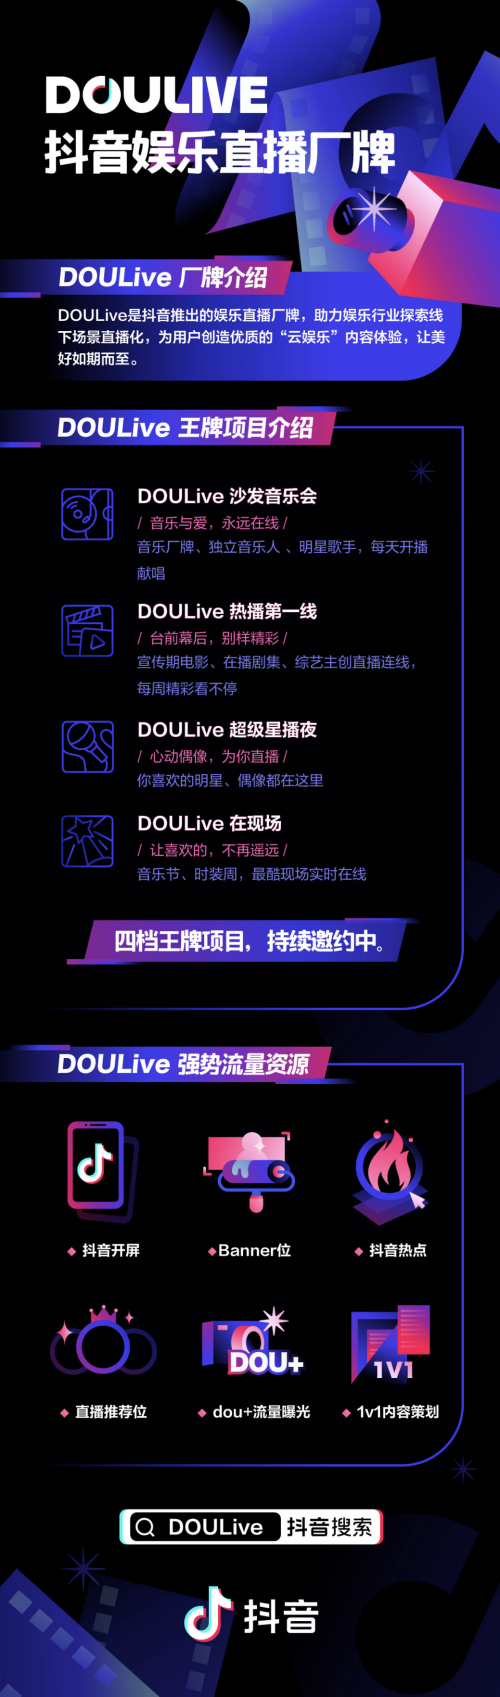 抖音娱乐直播厂牌DOULive正式推出,加速直播内容专业化